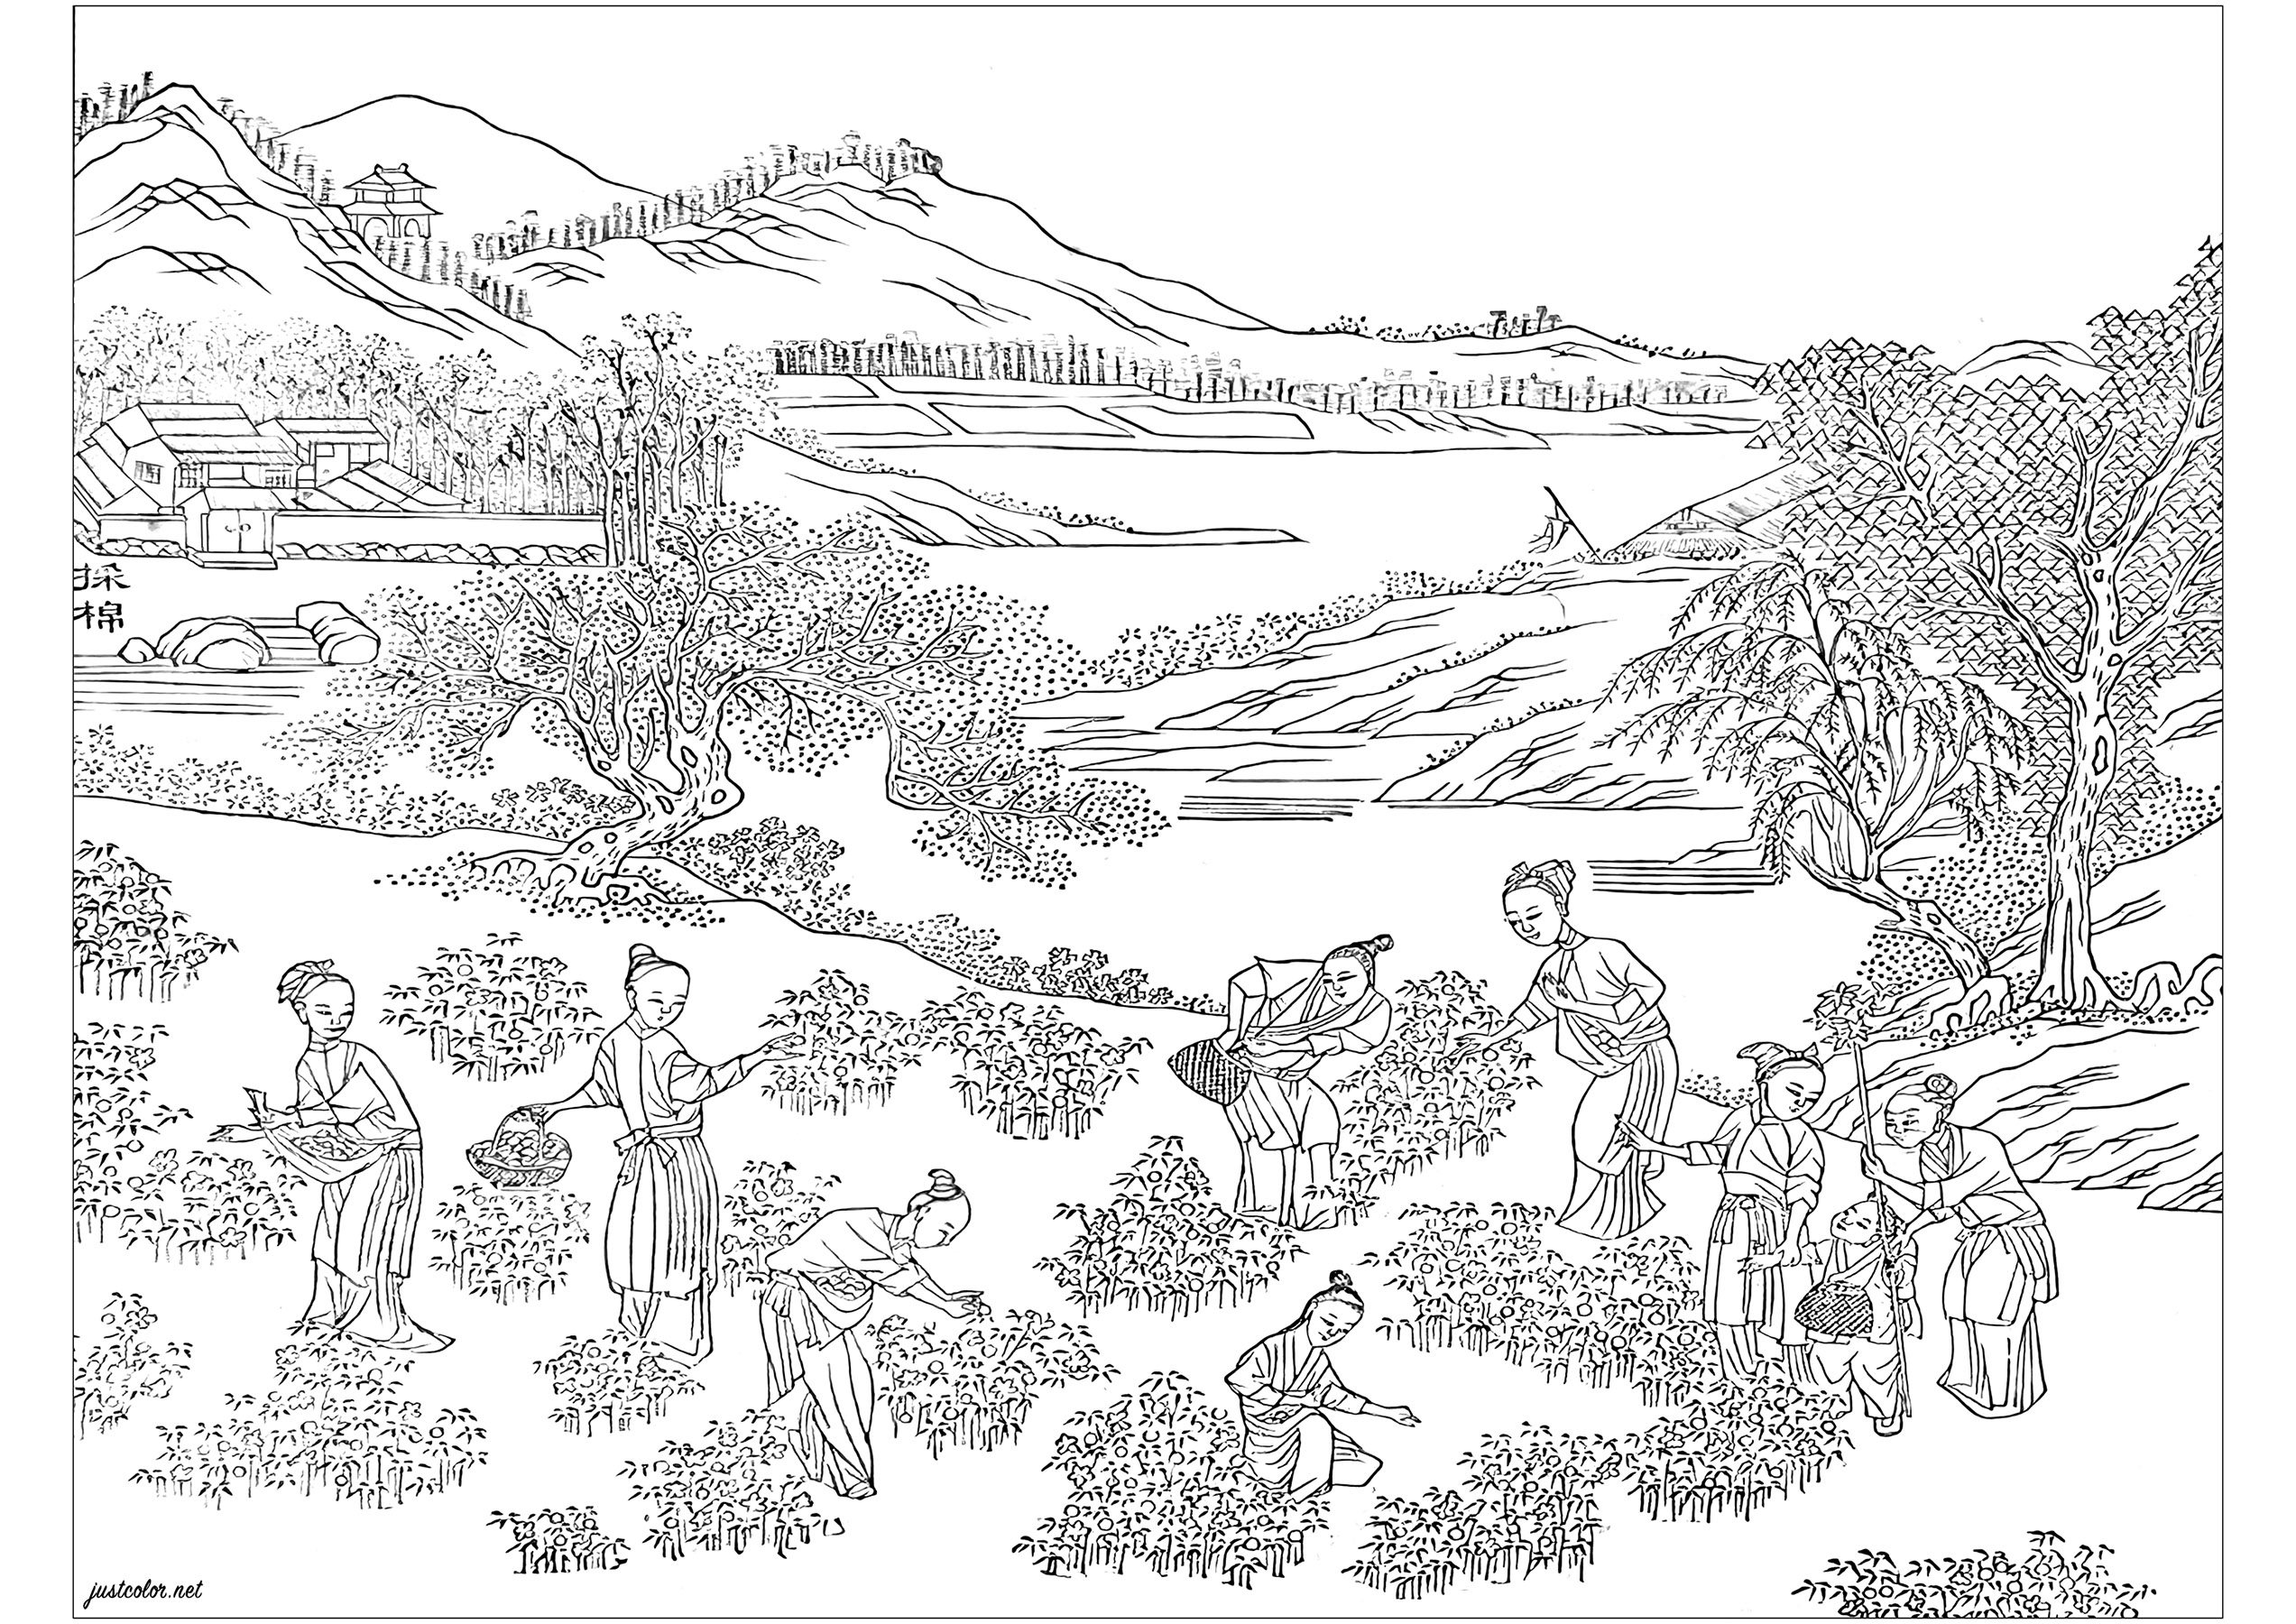 Coloriage créé à partir d'une page illustrée de l'album 'Images illustrant une production de coton' (1765). Cet album a été réalisé pour promouvoir les dernières technologies en matière de culture du coton et de production textile au XVIIIe siècle en Chine. Ce livre est exposé à la Bibliothèque Chester Beatty, à Dublin en Irlande, Artiste : Olivier